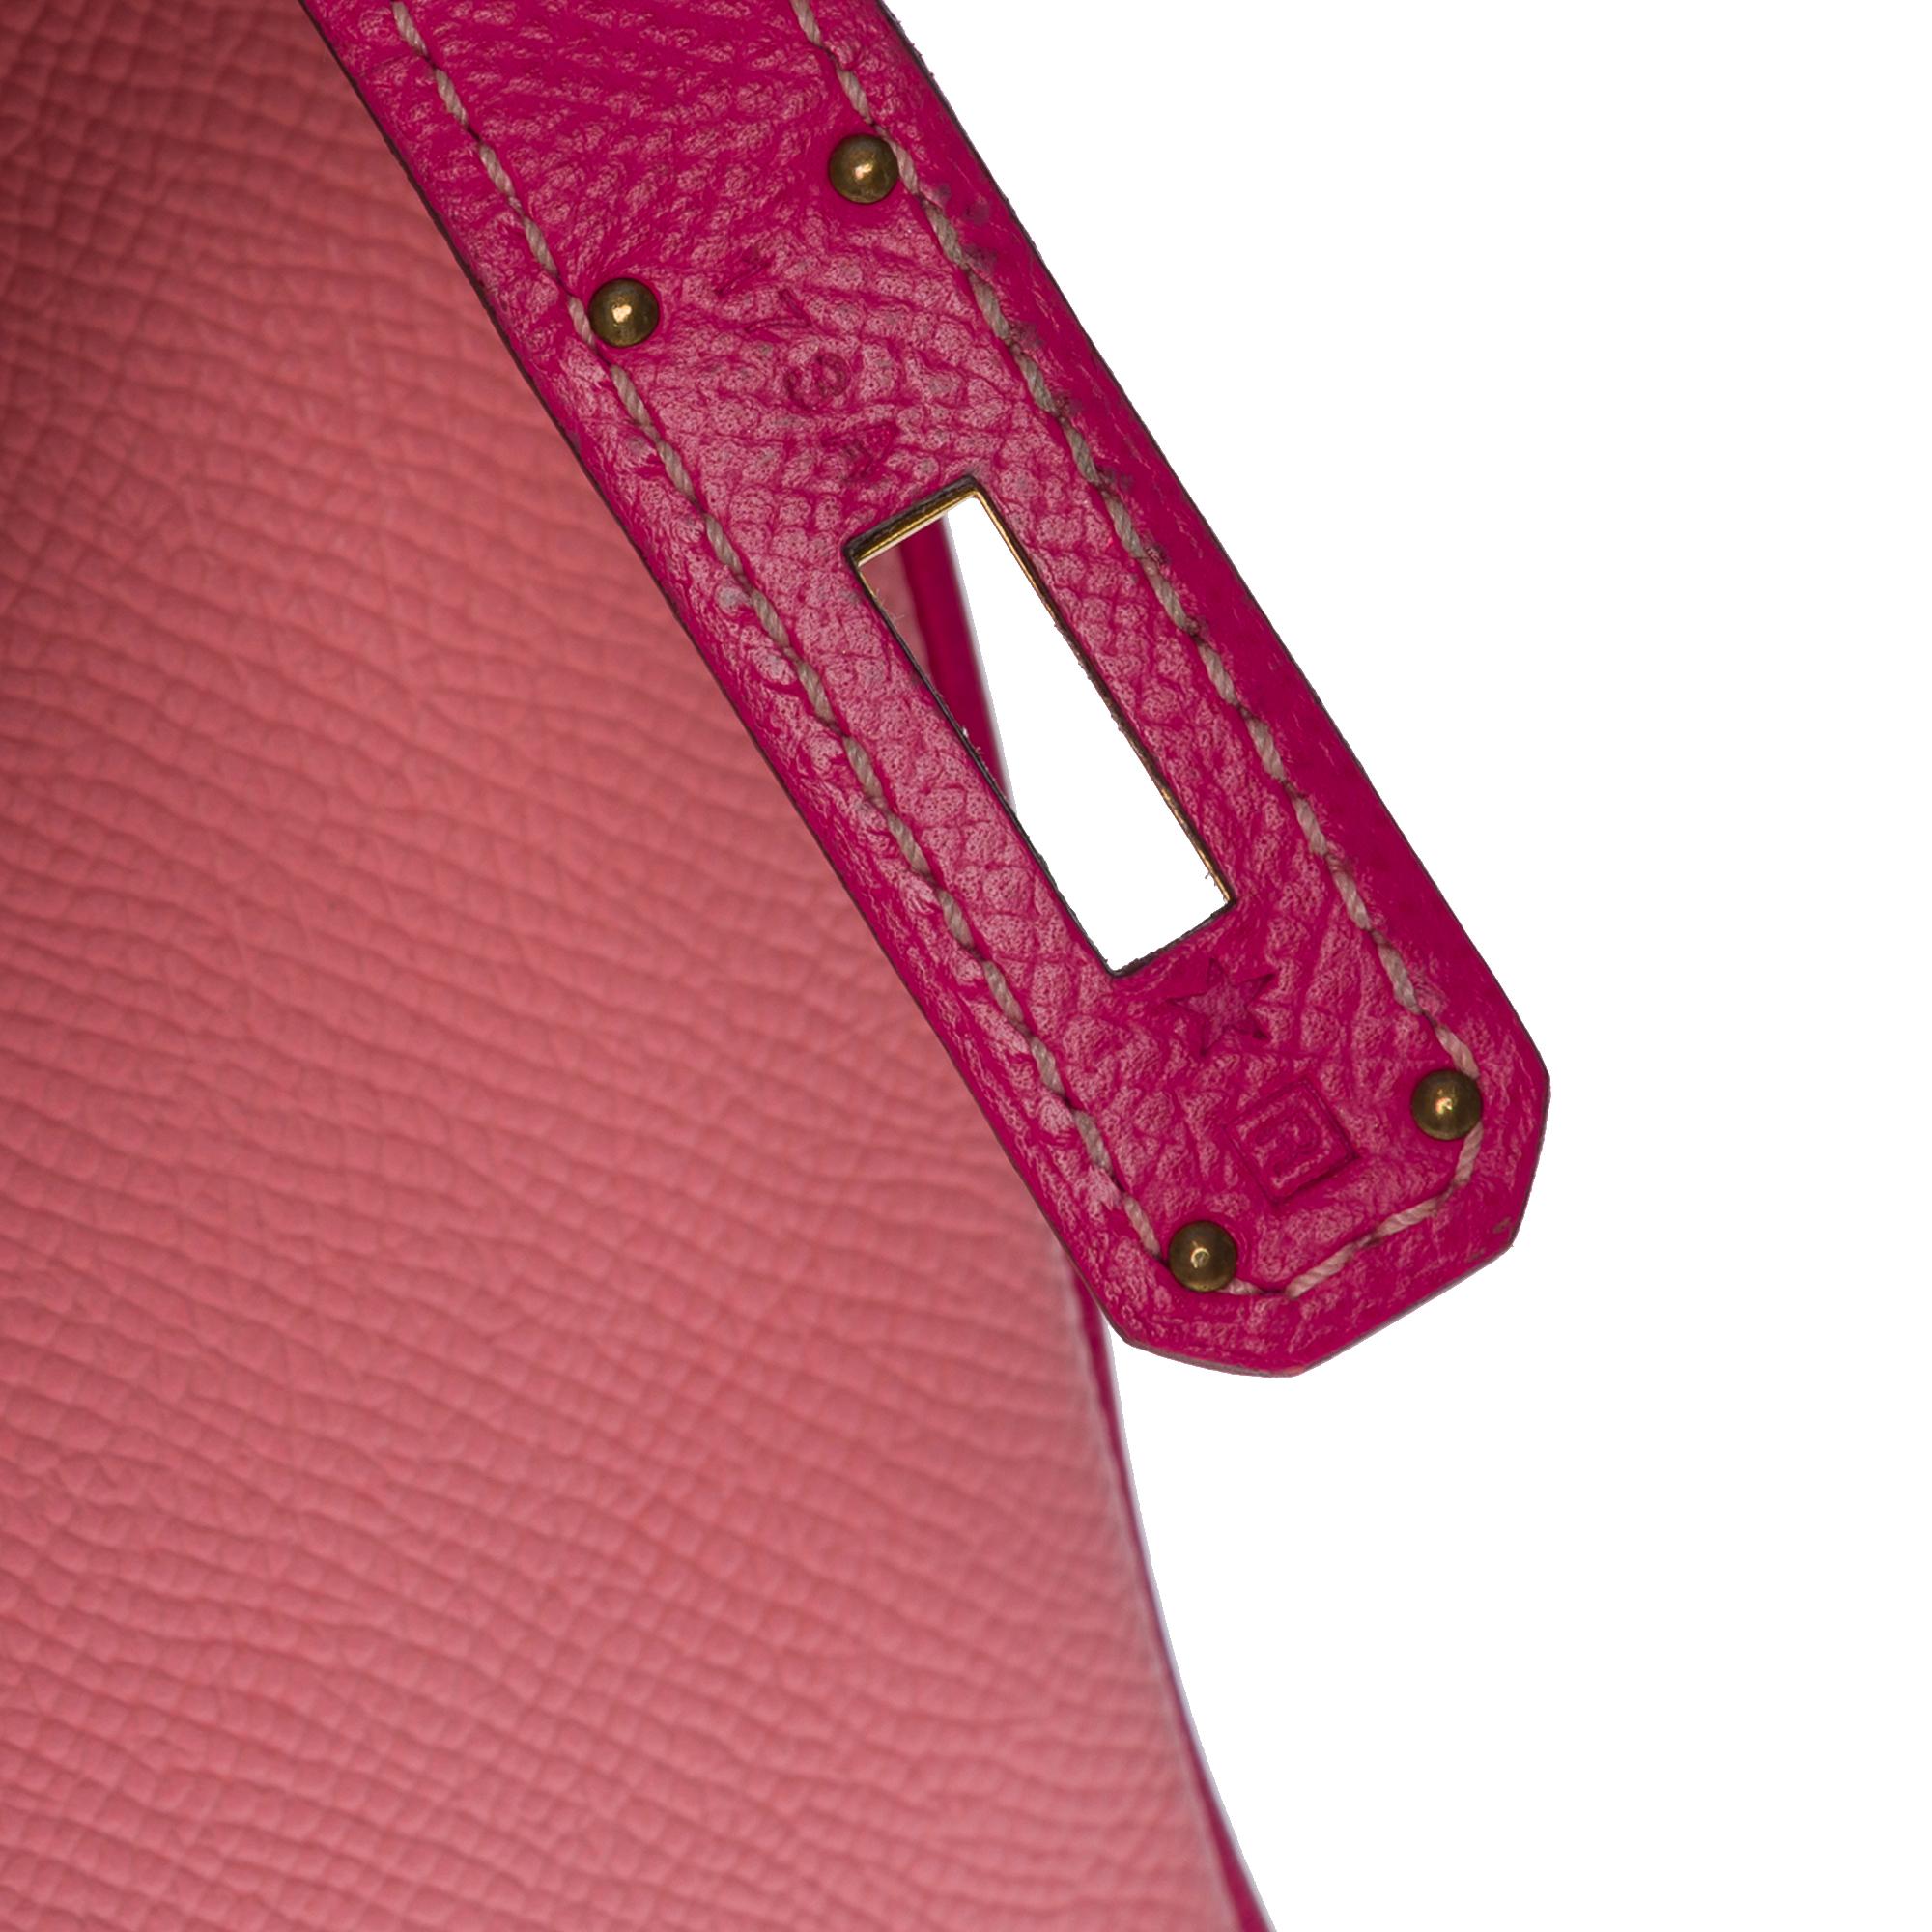  Rare Hermès Birkin 30 HSS Special Order handbag in Pink Epsom leather, BGHW For Sale 3